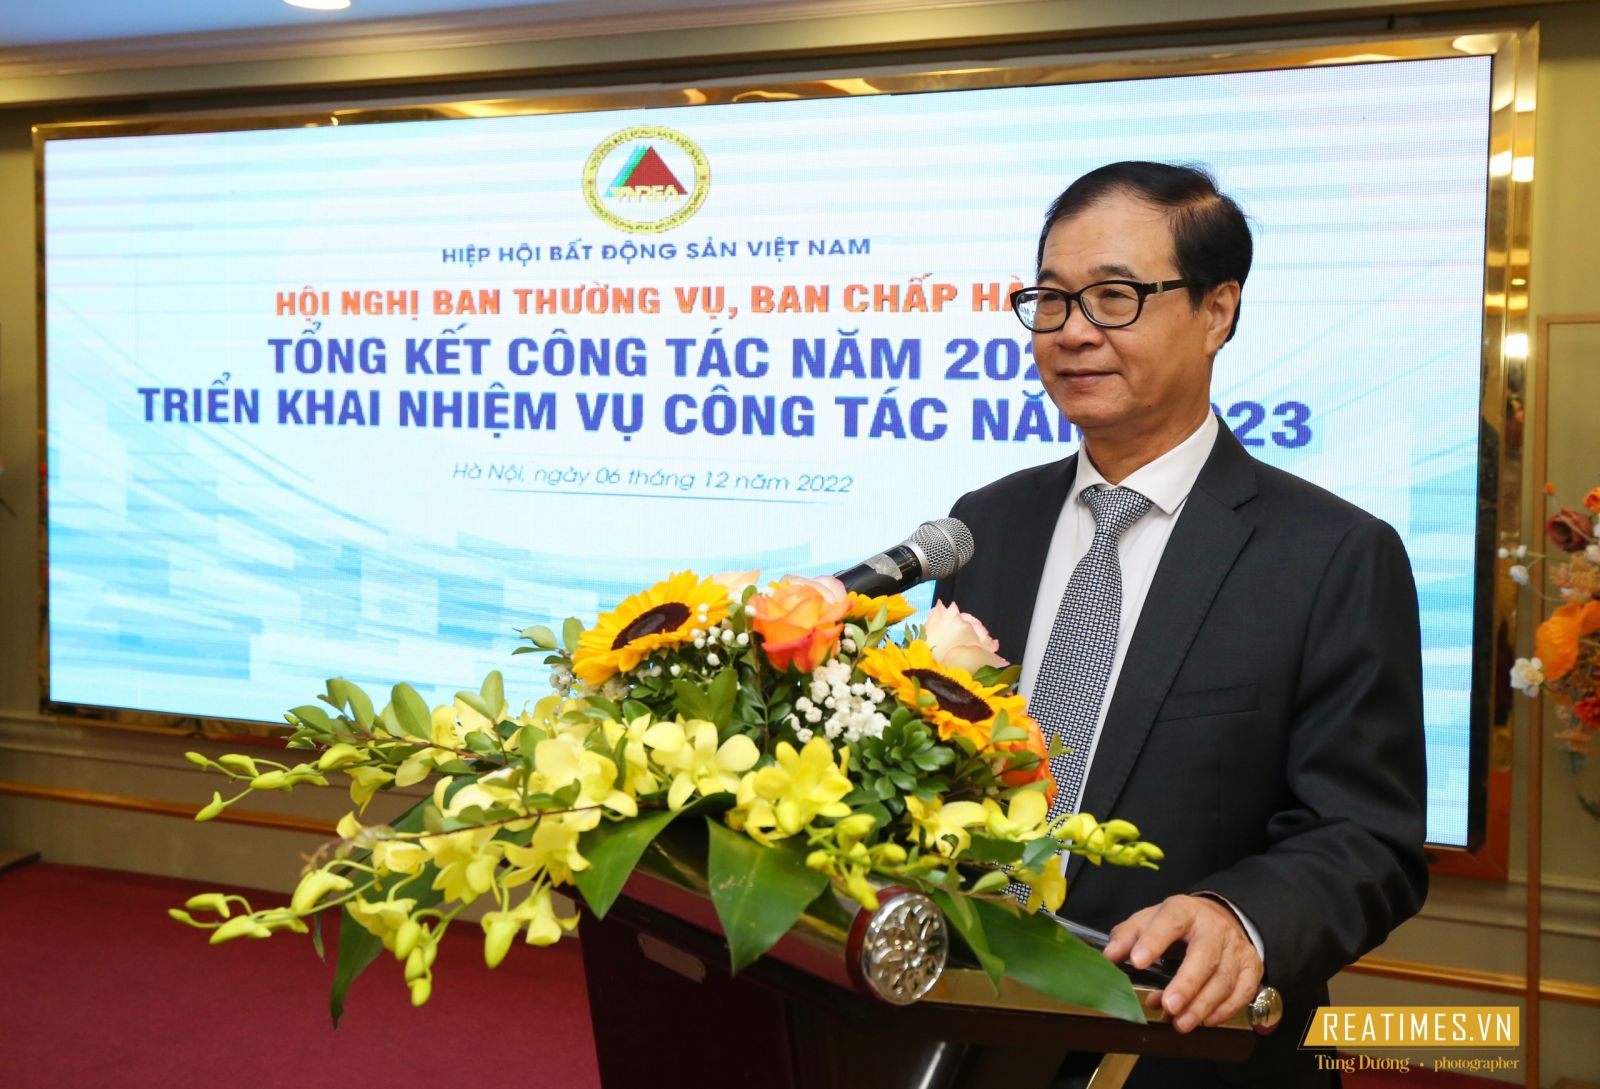 Hội nghị Ban Thường vụ, Ban Chấp hành Hiệp hội Bất động sản Việt Nam lần 2 nhiệm kỳ 2022 - 2027- Ảnh 15.